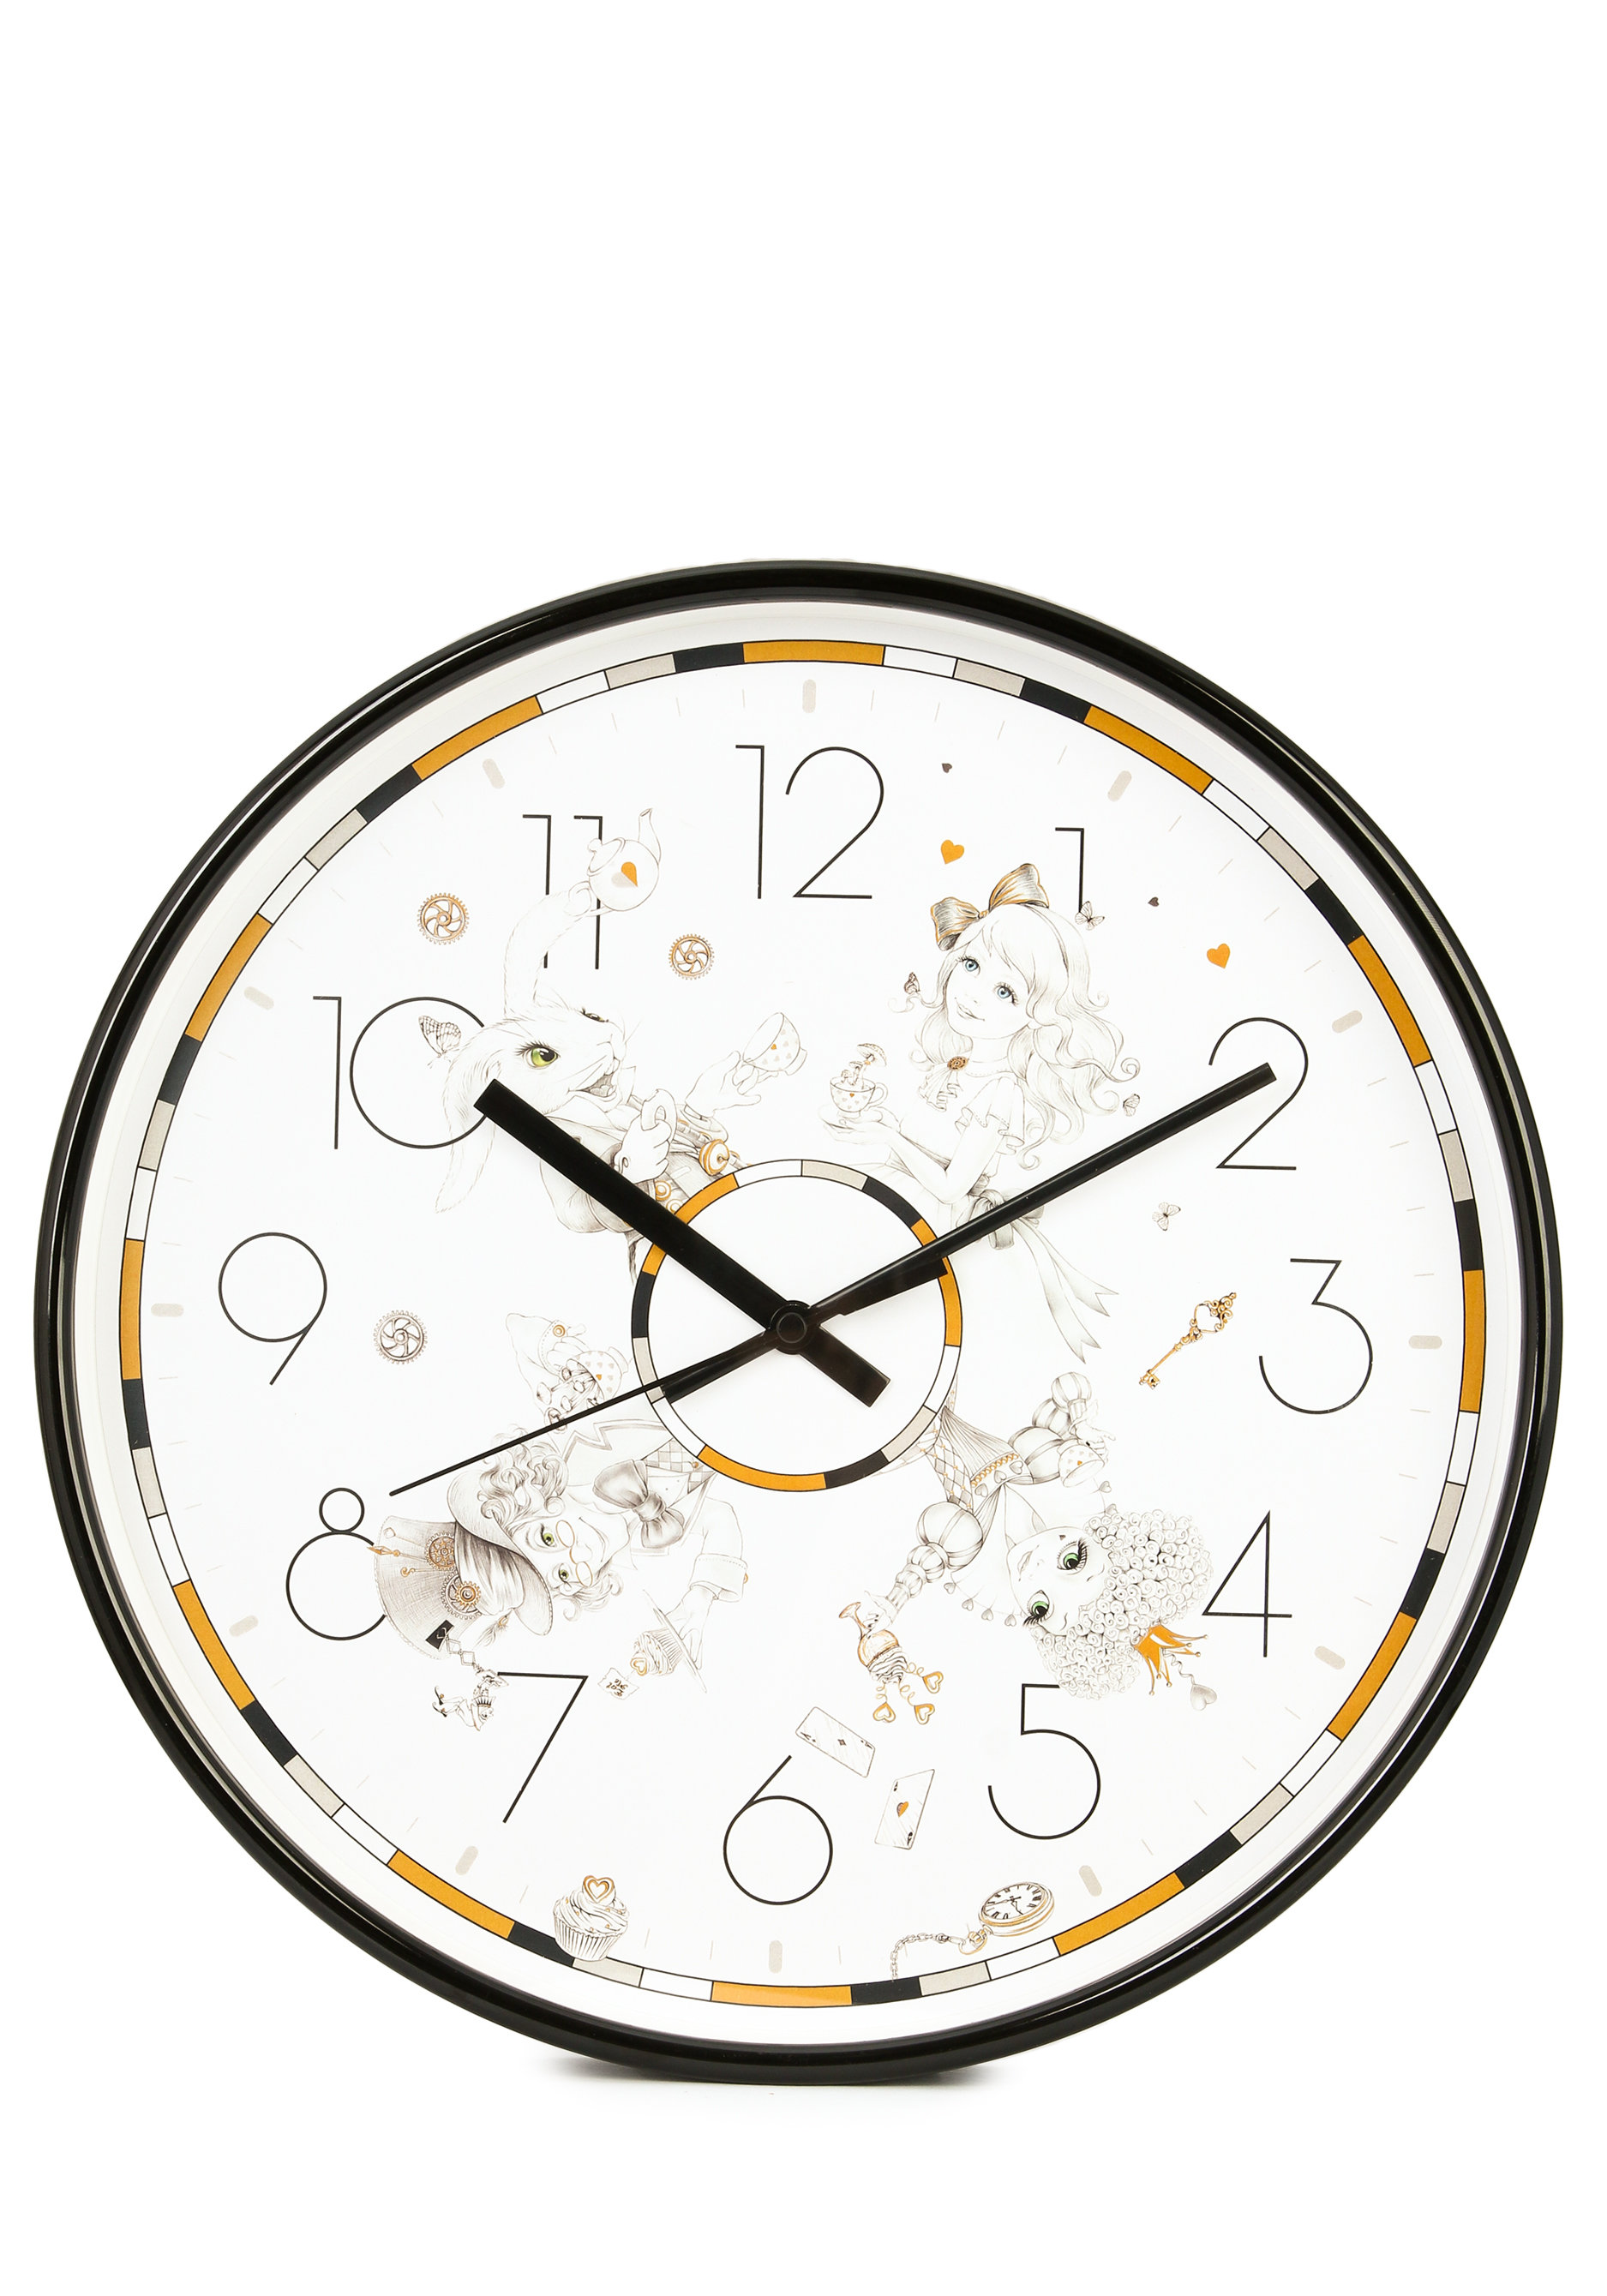 Часы настенные "Волшебство времени" Lefard, цвет черный, размер 30,5 см - фото 1